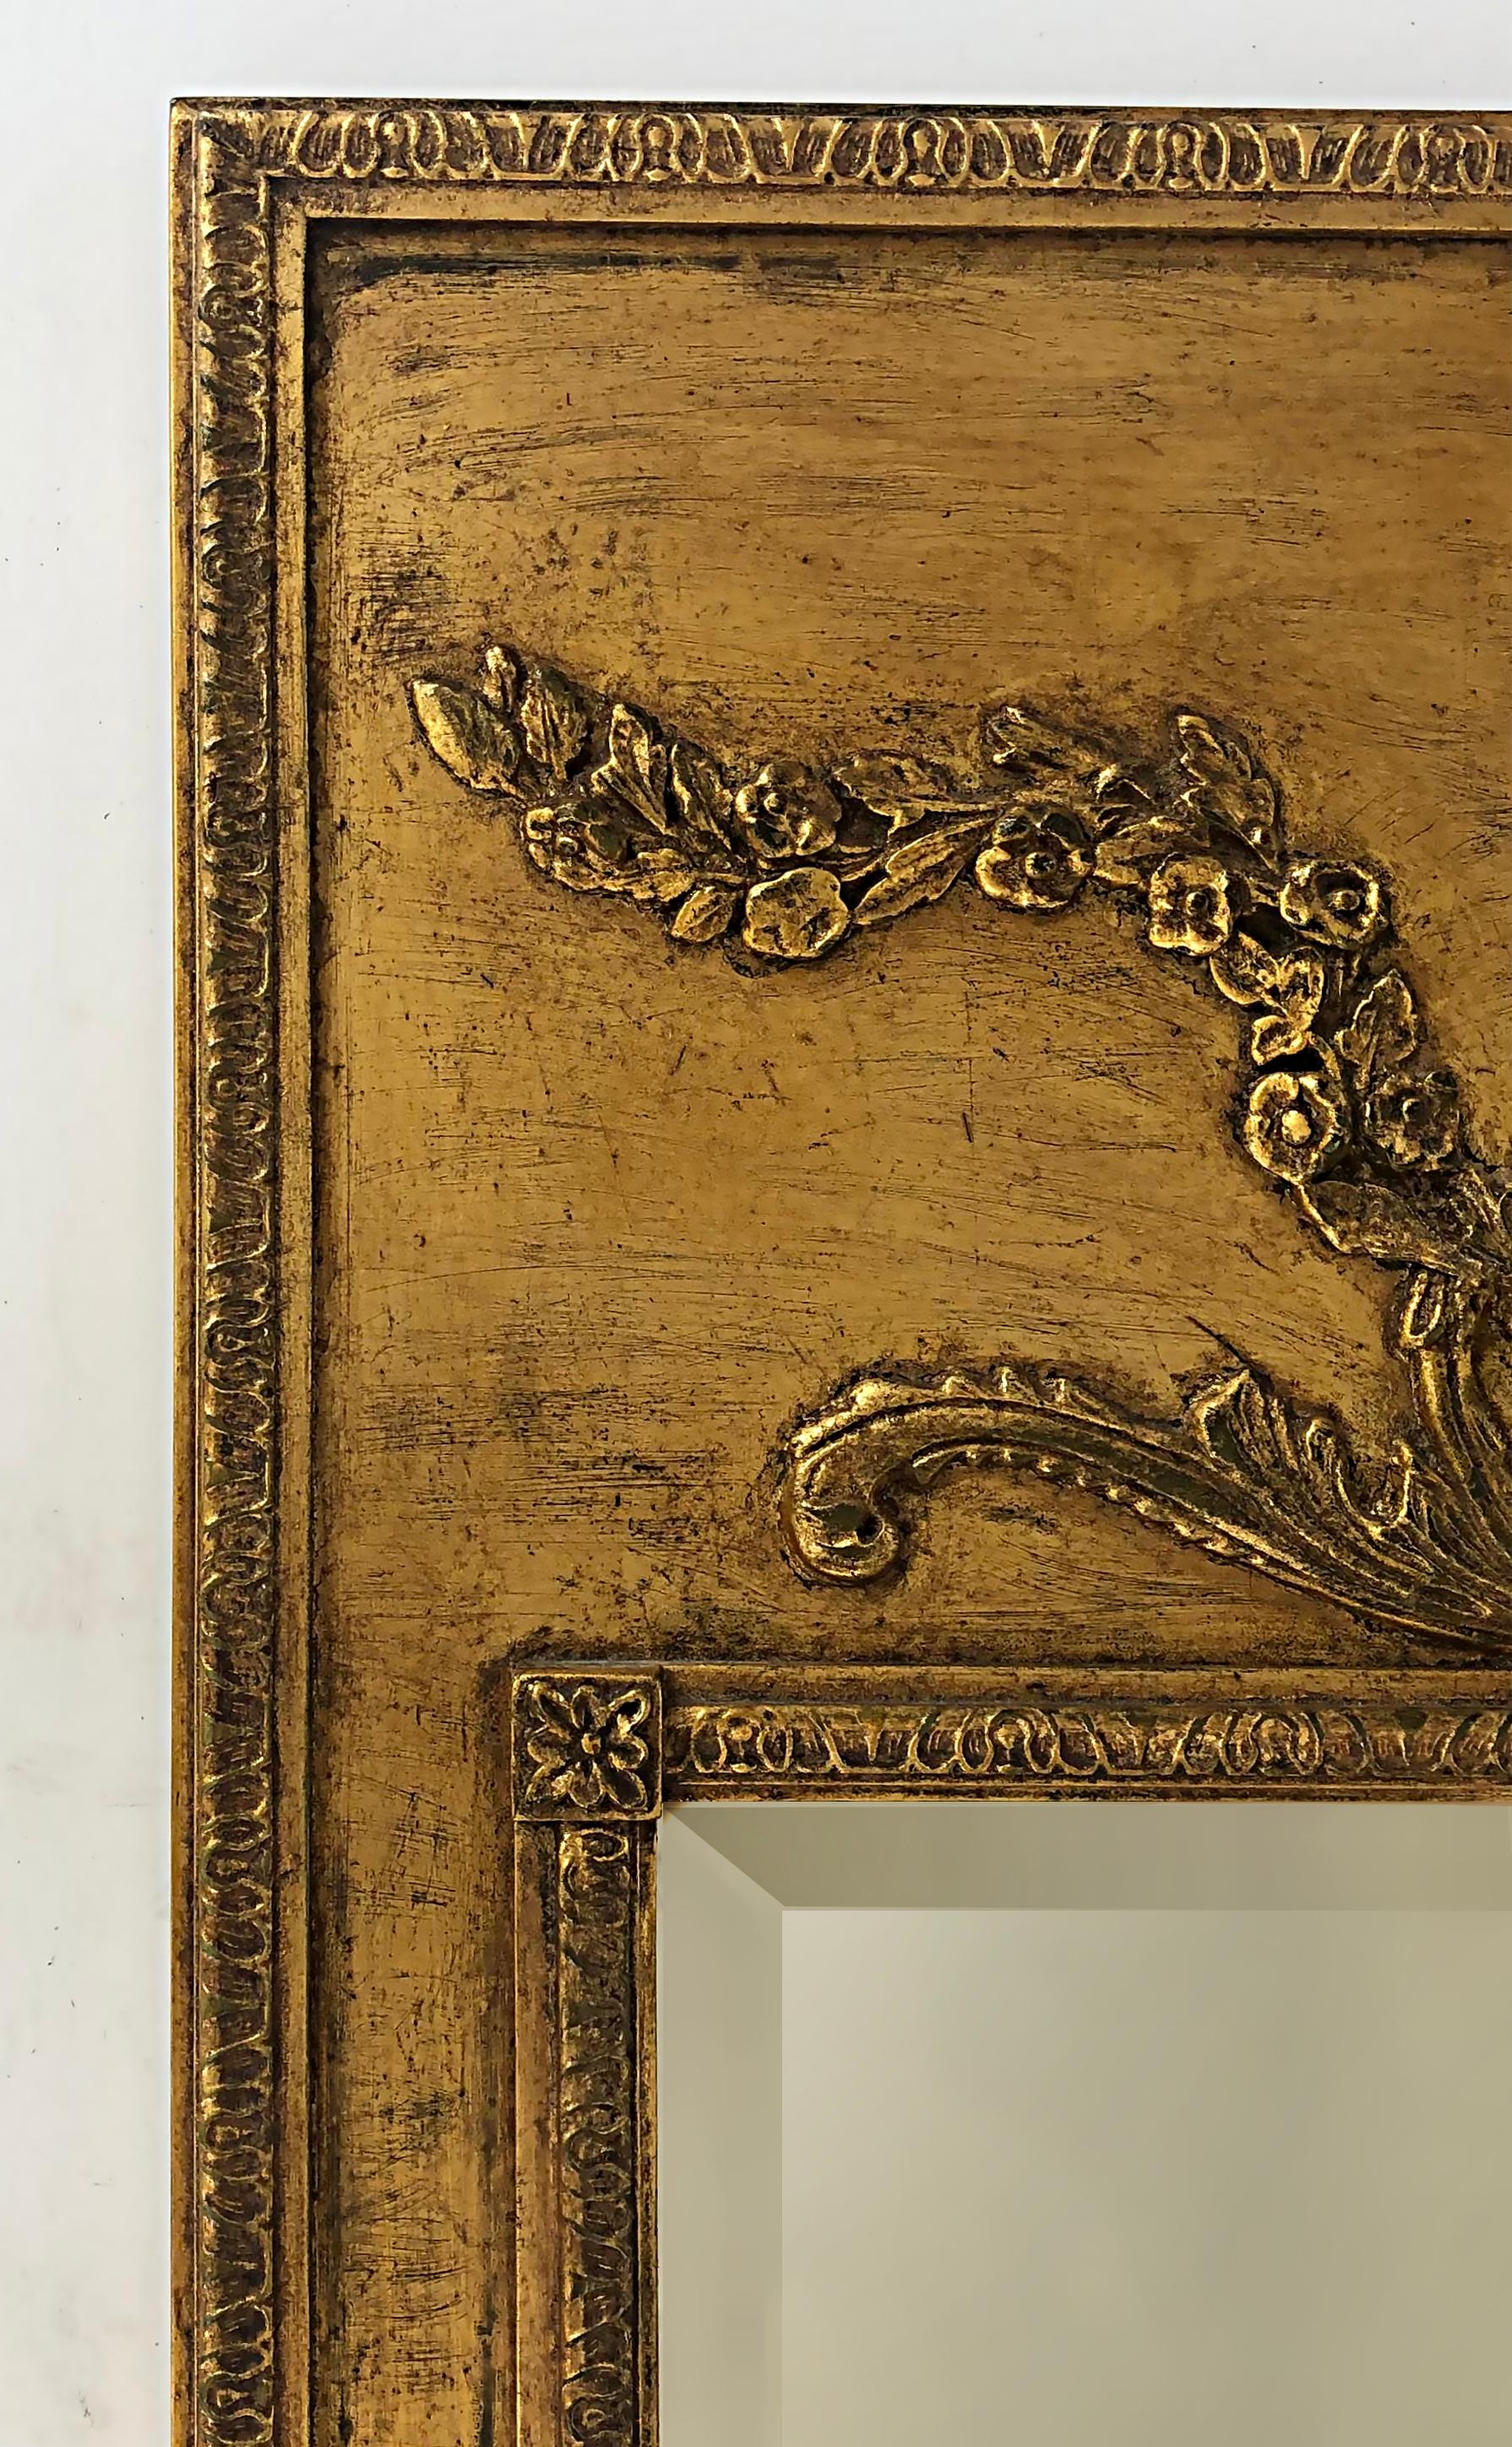 Vieux miroir biseauté de cheminée en bois doré, style français.

Nous proposons à la vente un élégant miroir de cheminée en bois doré de style français orné d'un motif de cartouche dans le haut. Le miroir lui-même est biseauté et le cadre est